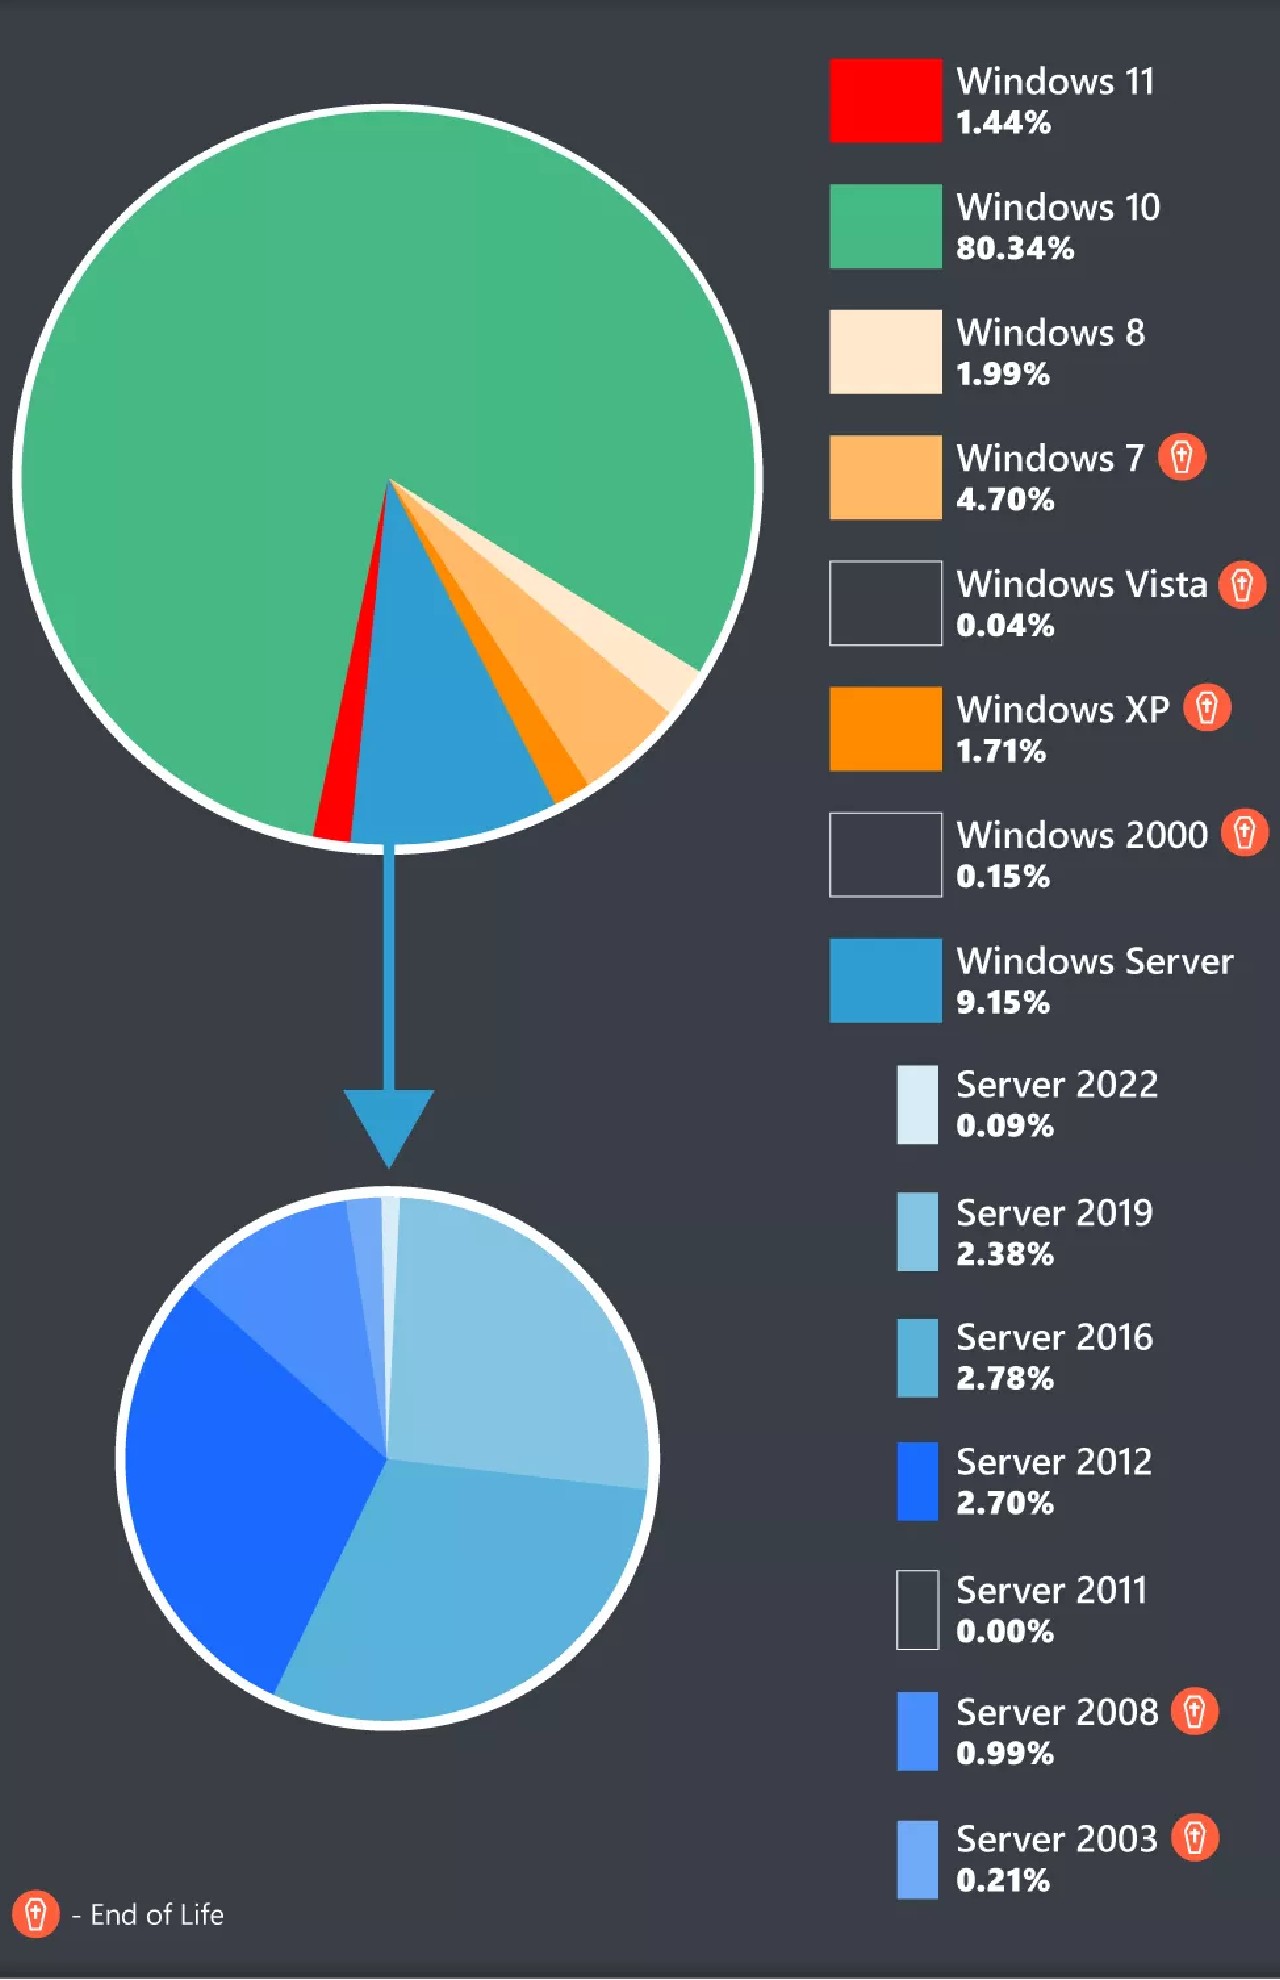 Anket Sonuçlarında Windows 11, XP'nin Bile Gerisinde Kaldı - Yerli Portal